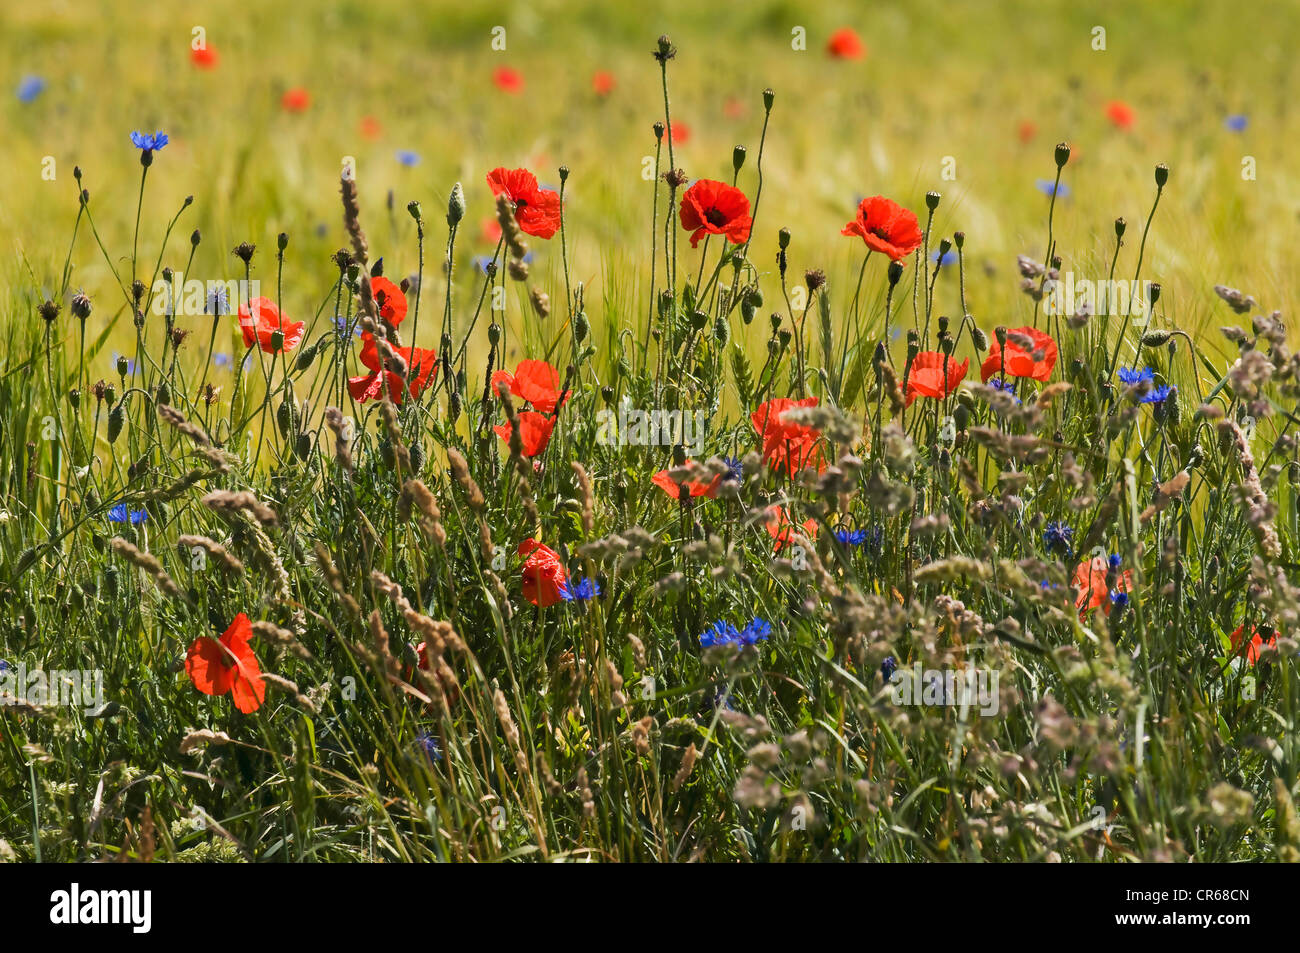 Bord naturel d'un champ avec la floraison des graminées et des fleurs sauvages, du coquelicot (Papaver rhoeas), bleuet (Centaurea cyanus) Banque D'Images